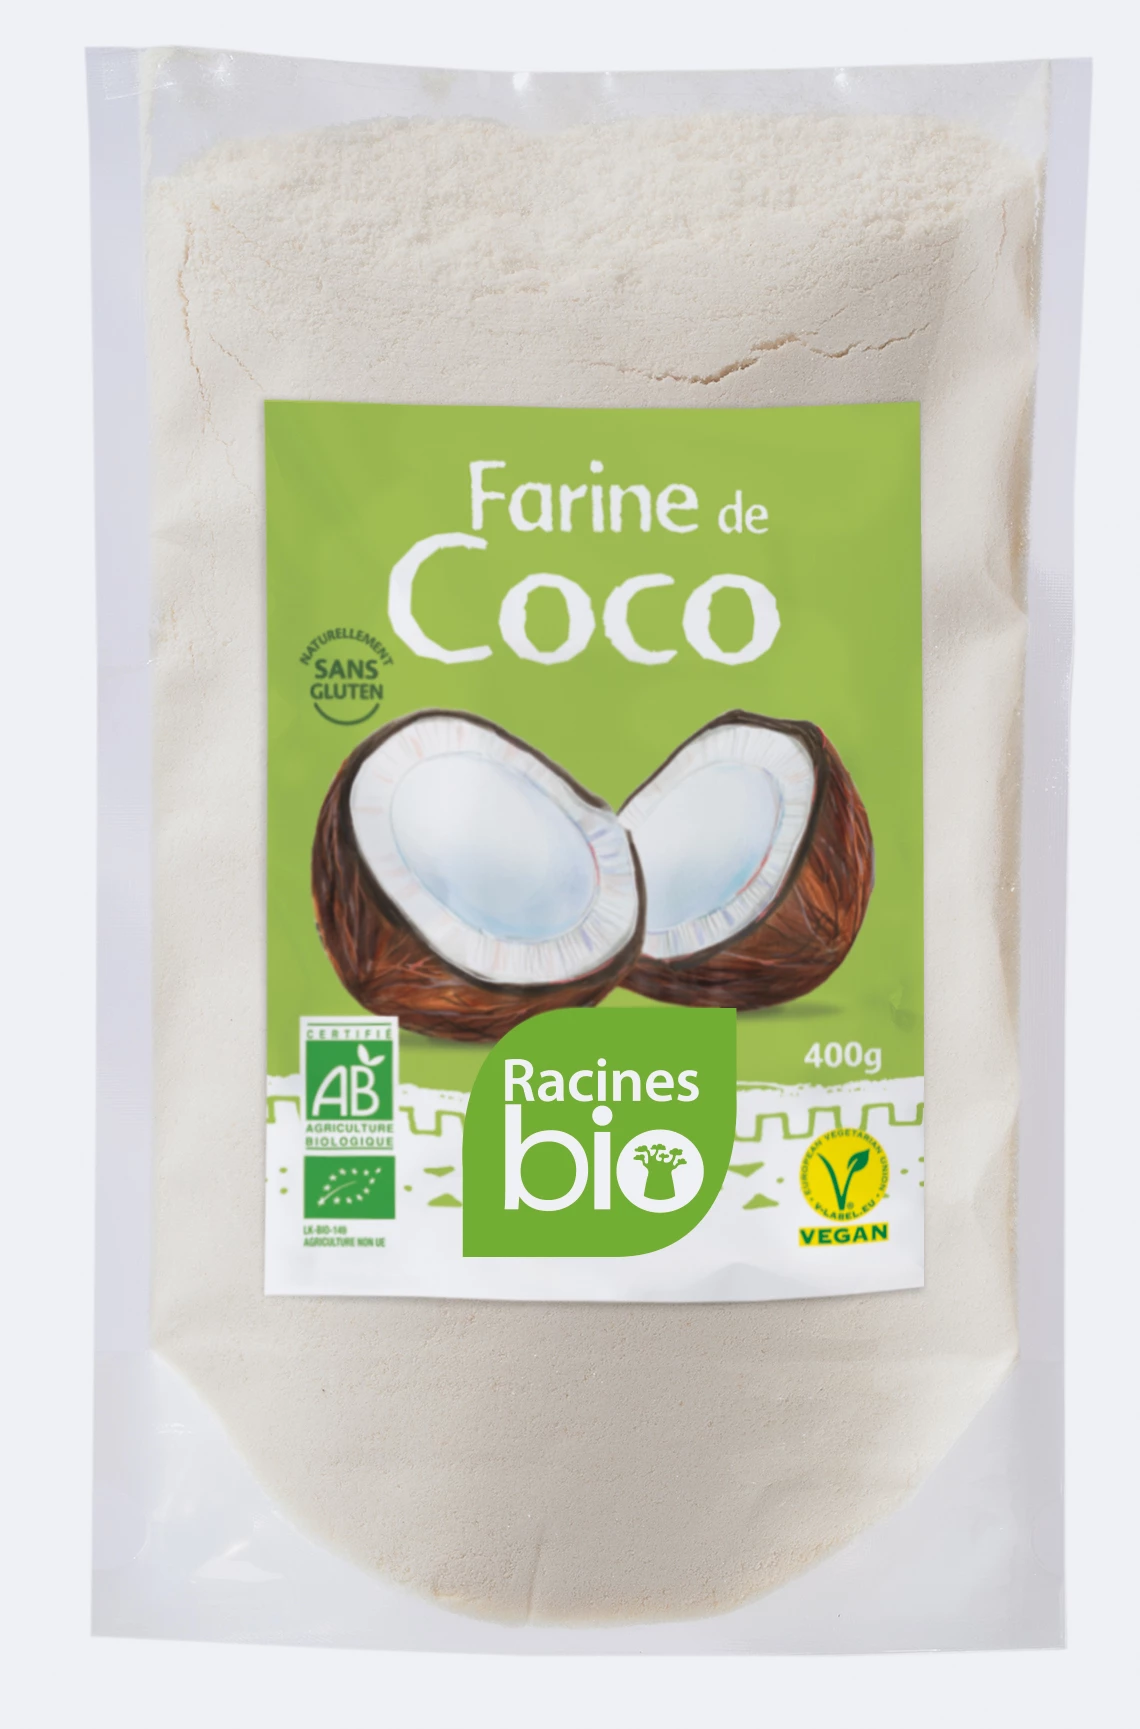 Farinha de Coco (10 X 400 G) - Racines Bio